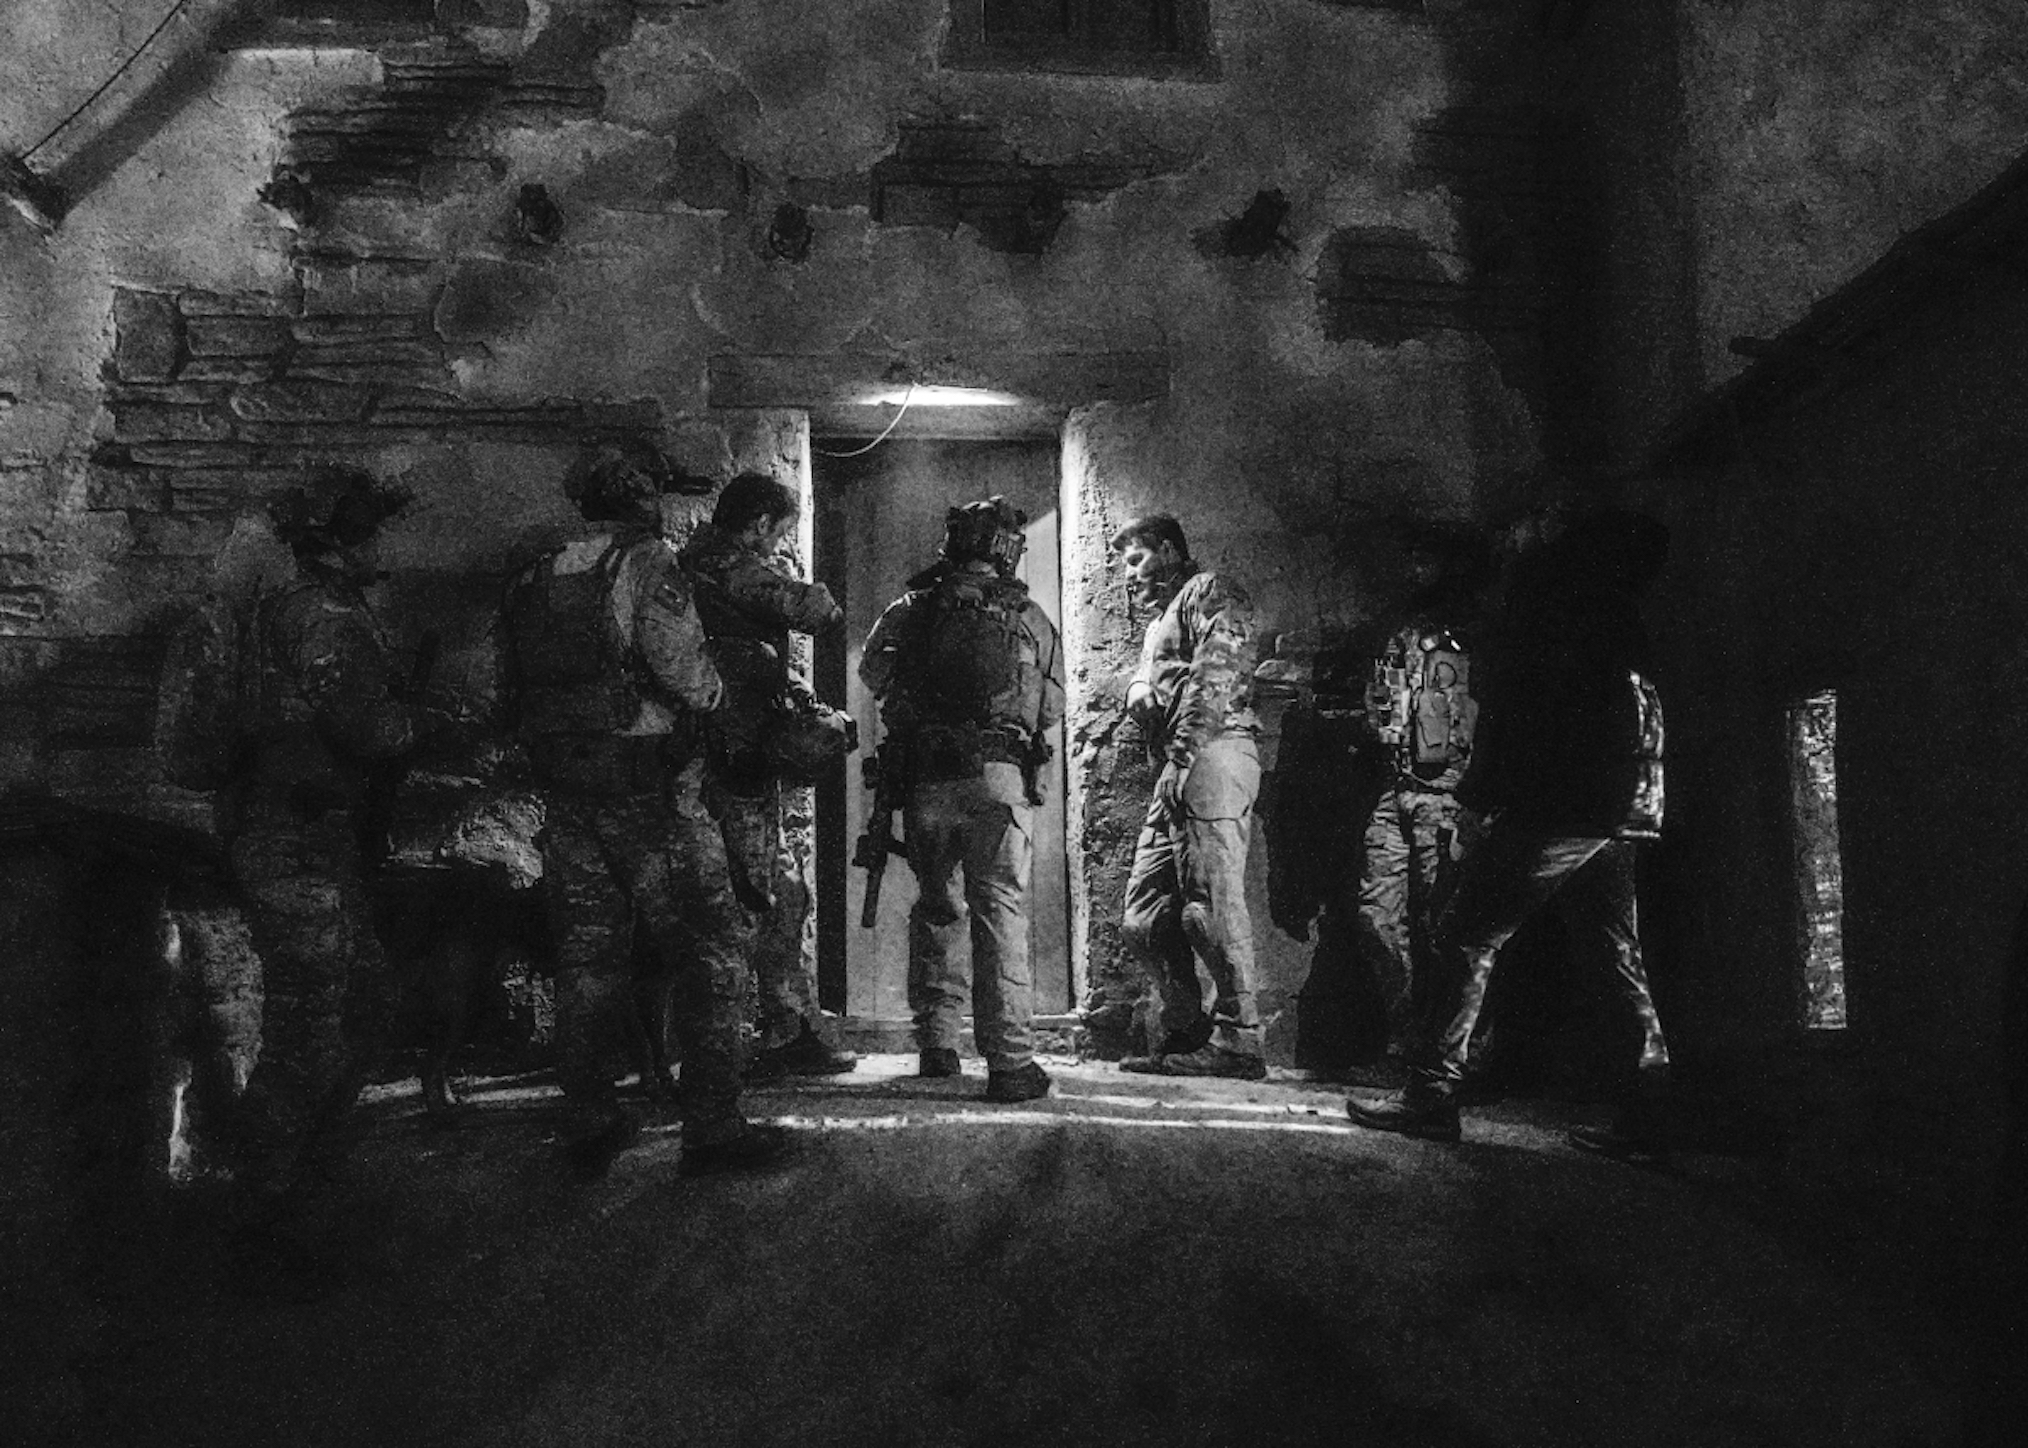 SEAL Team Season 3 Episode 17 Bravo Team Mission Deployment